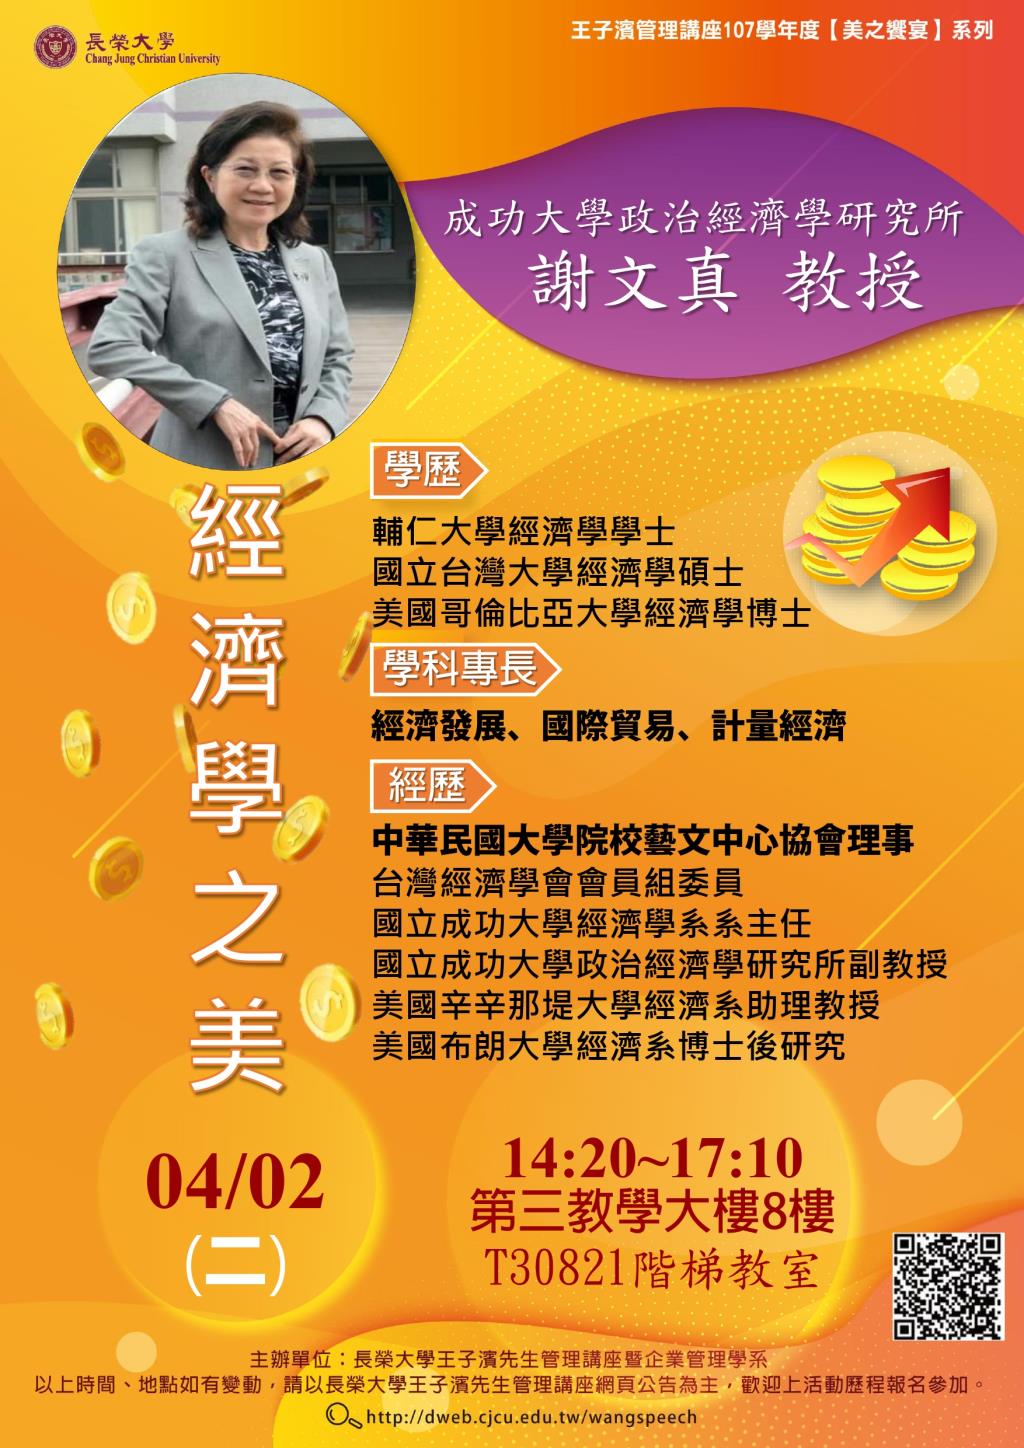 敬邀參加本週二下午(04/02)王子濱先生管理講座---成功大學政治經濟學研究所 謝文真教授